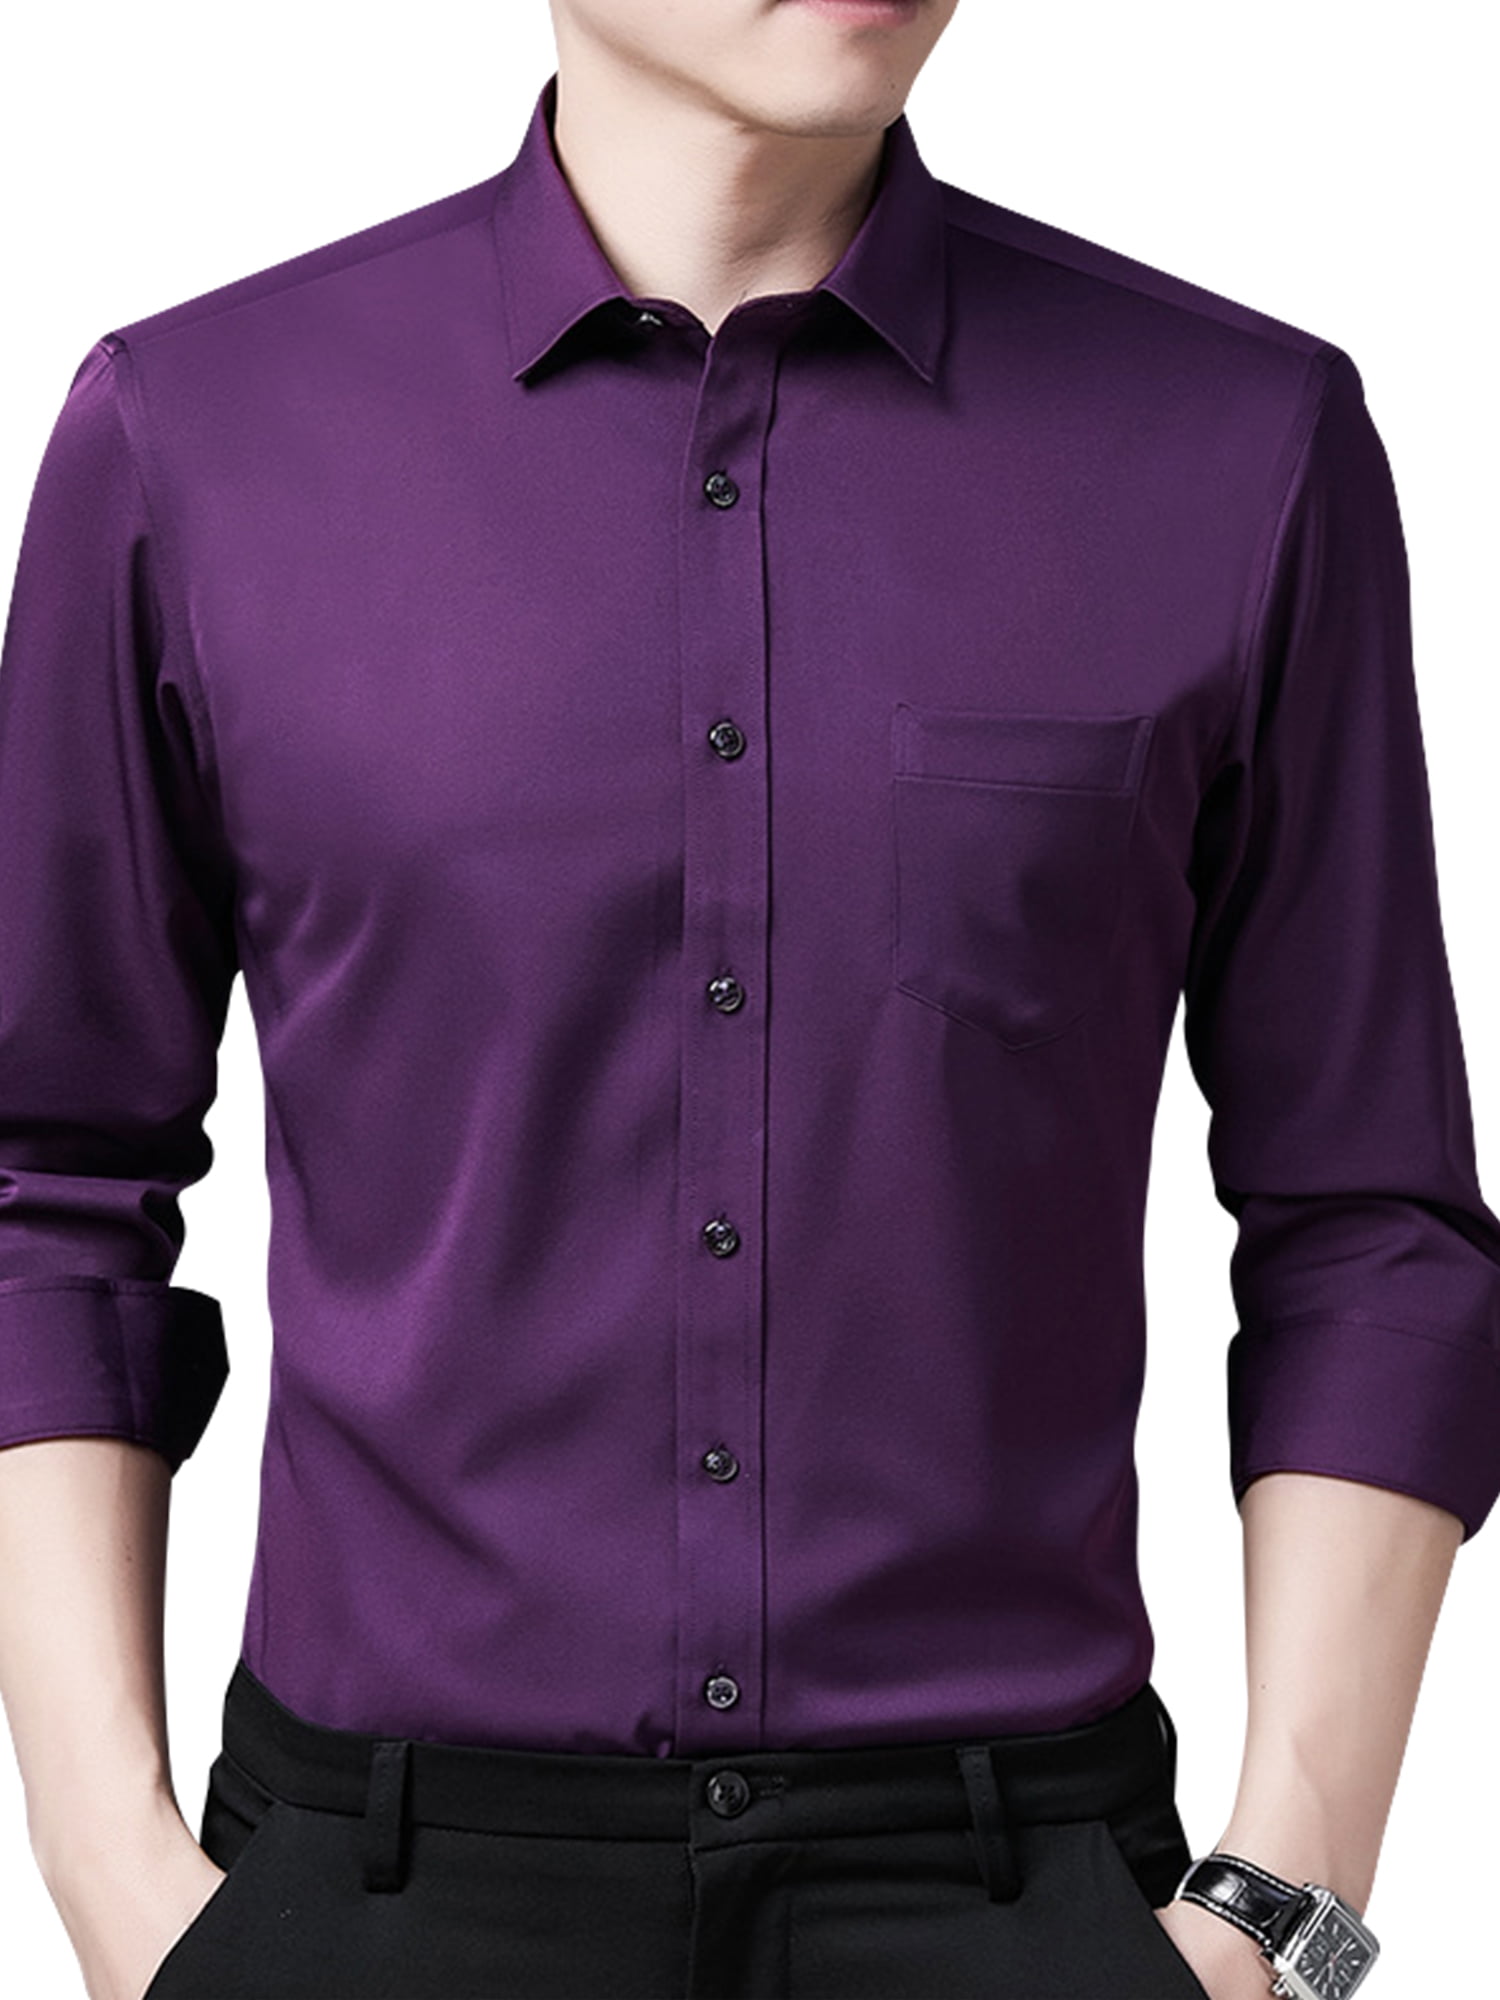 Regular-Fit Button Down Long Sleeve Roll-Up Linen Shirts Mens Casual Shirt Tops 